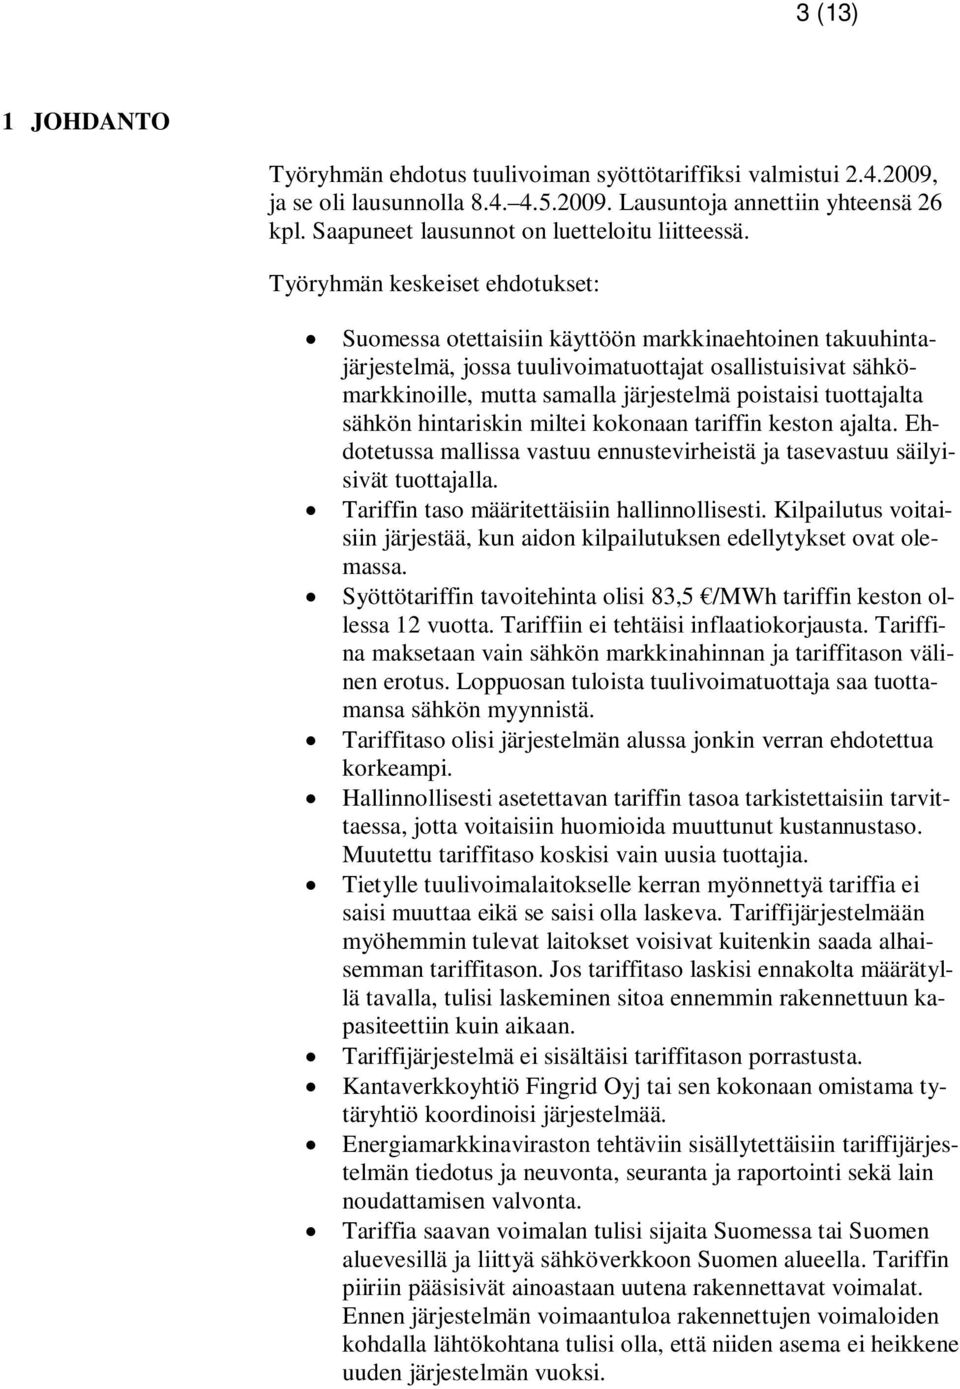 Työryhmän keskeiset ehdotukset: Suomessa otettaisiin käyttöön markkinaehtoinen takuuhintajärjestelmä, jossa tuulivoimatuottajat osallistuisivat sähkömarkkinoille, mutta samalla järjestelmä poistaisi